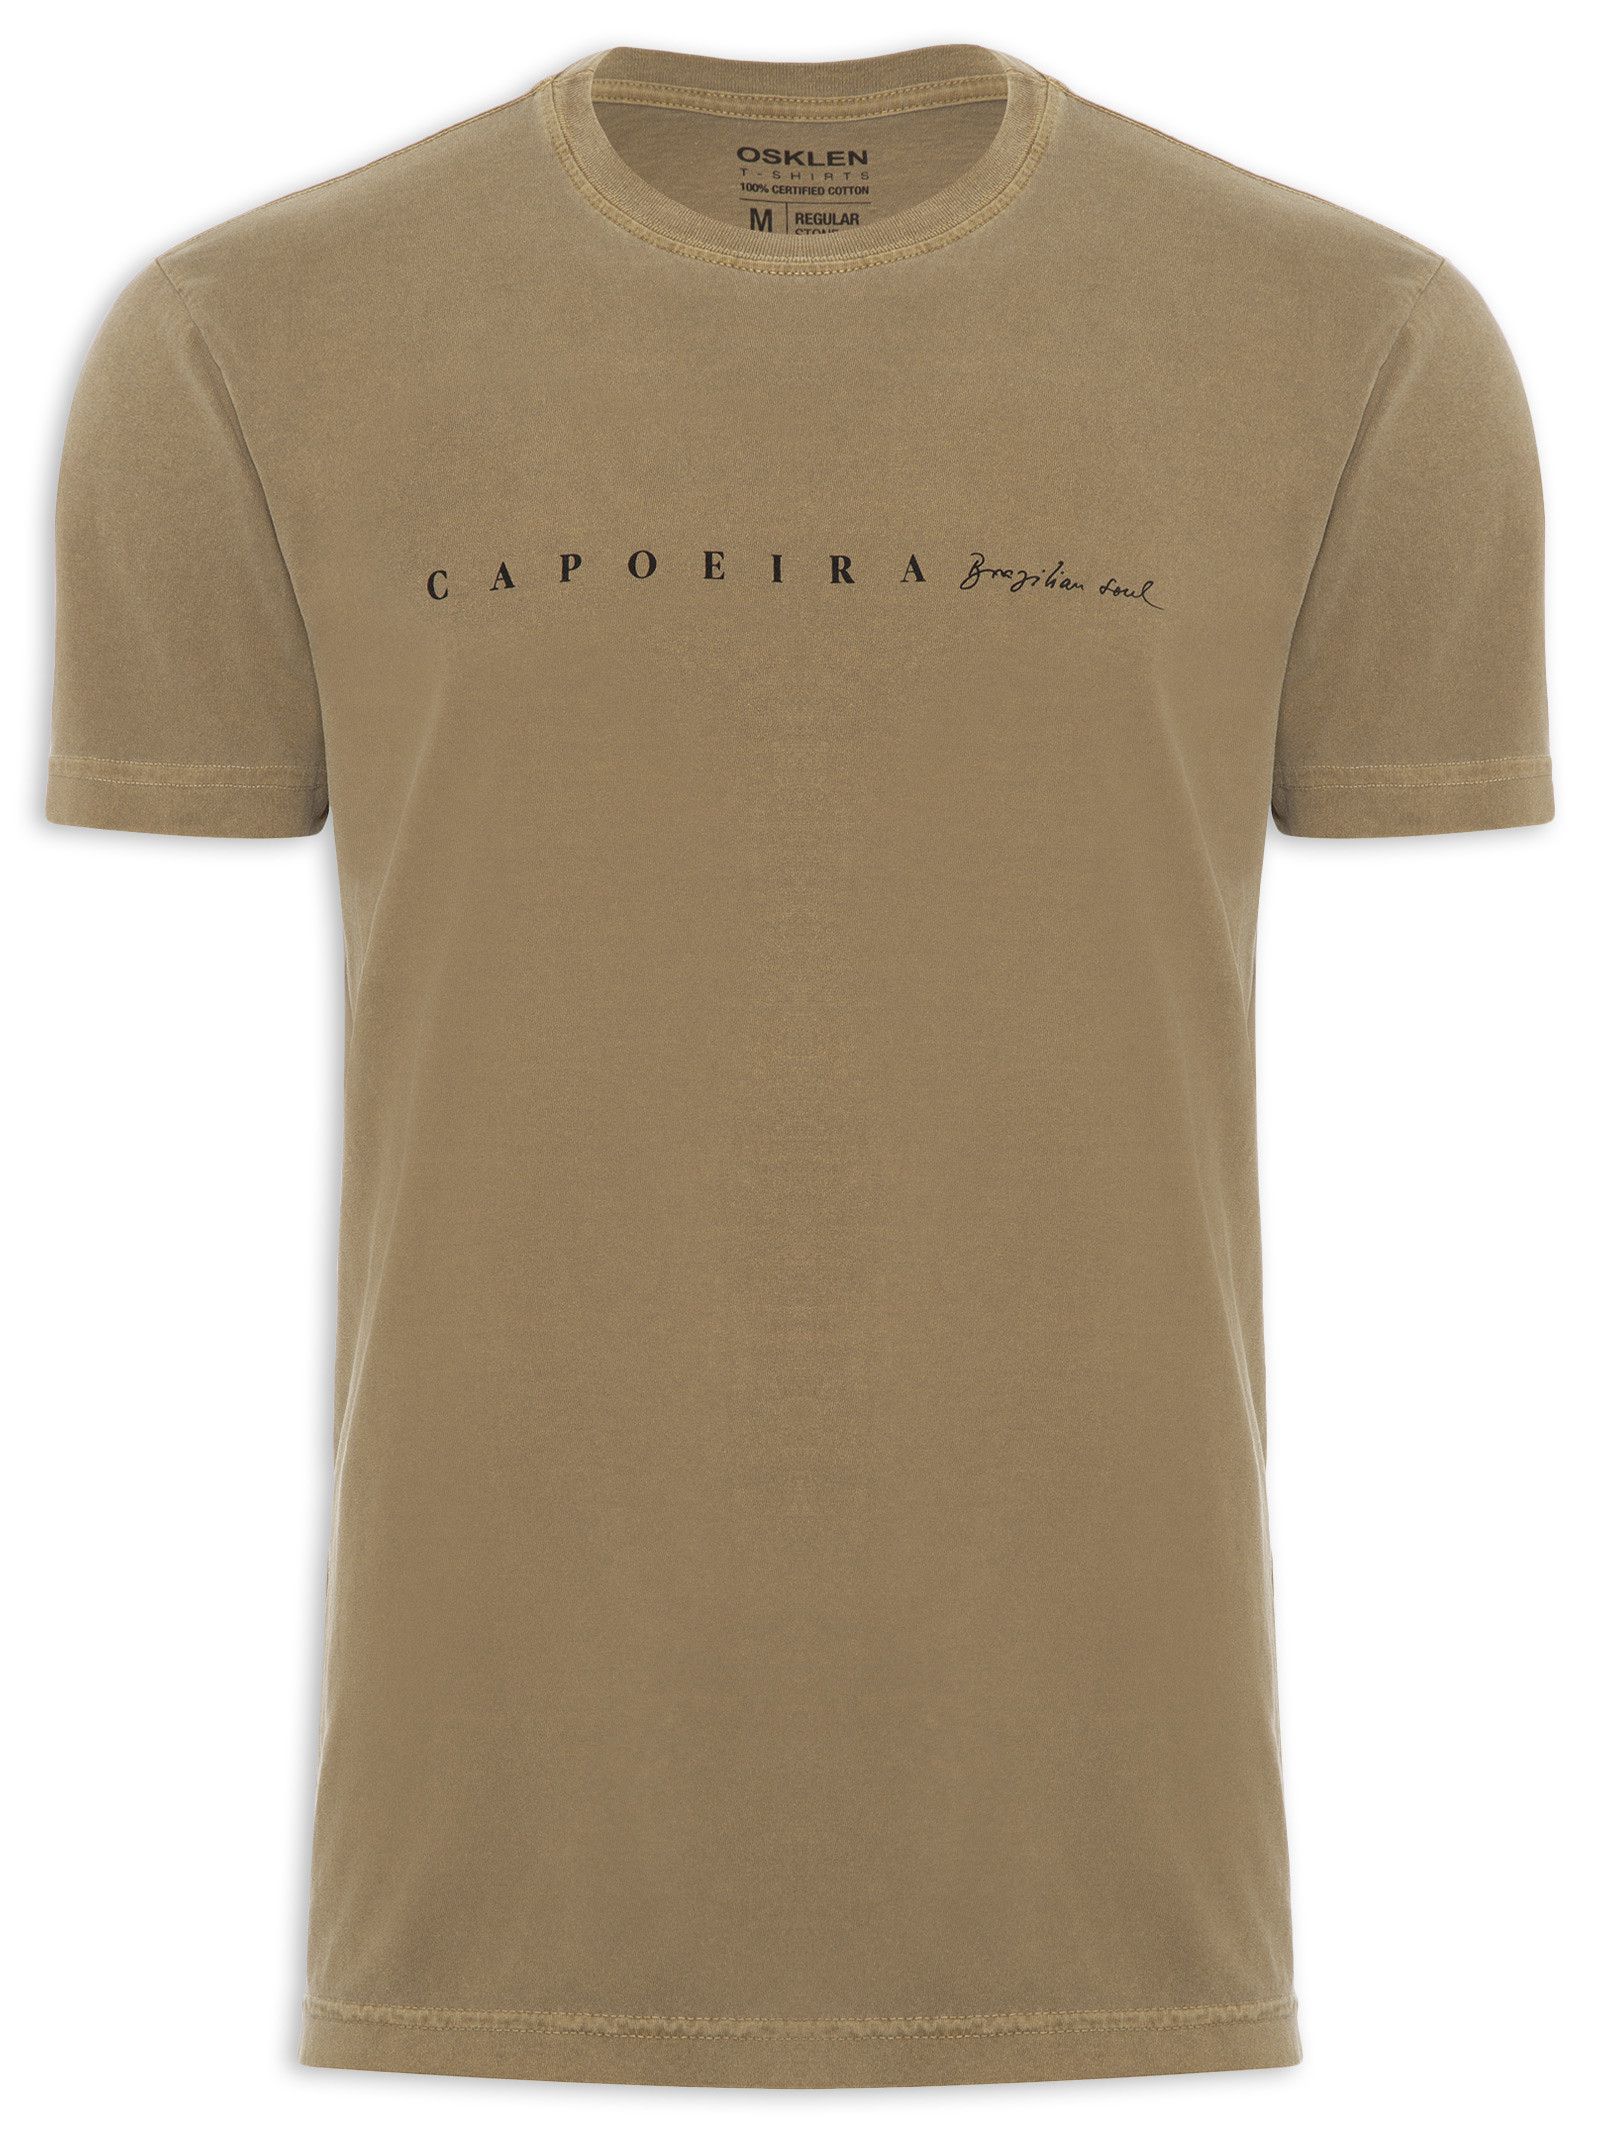 Camiseta Osklen Regular Stone Capoeira - Dom Store Multimarcas Vestuário  Calçados Acessórios